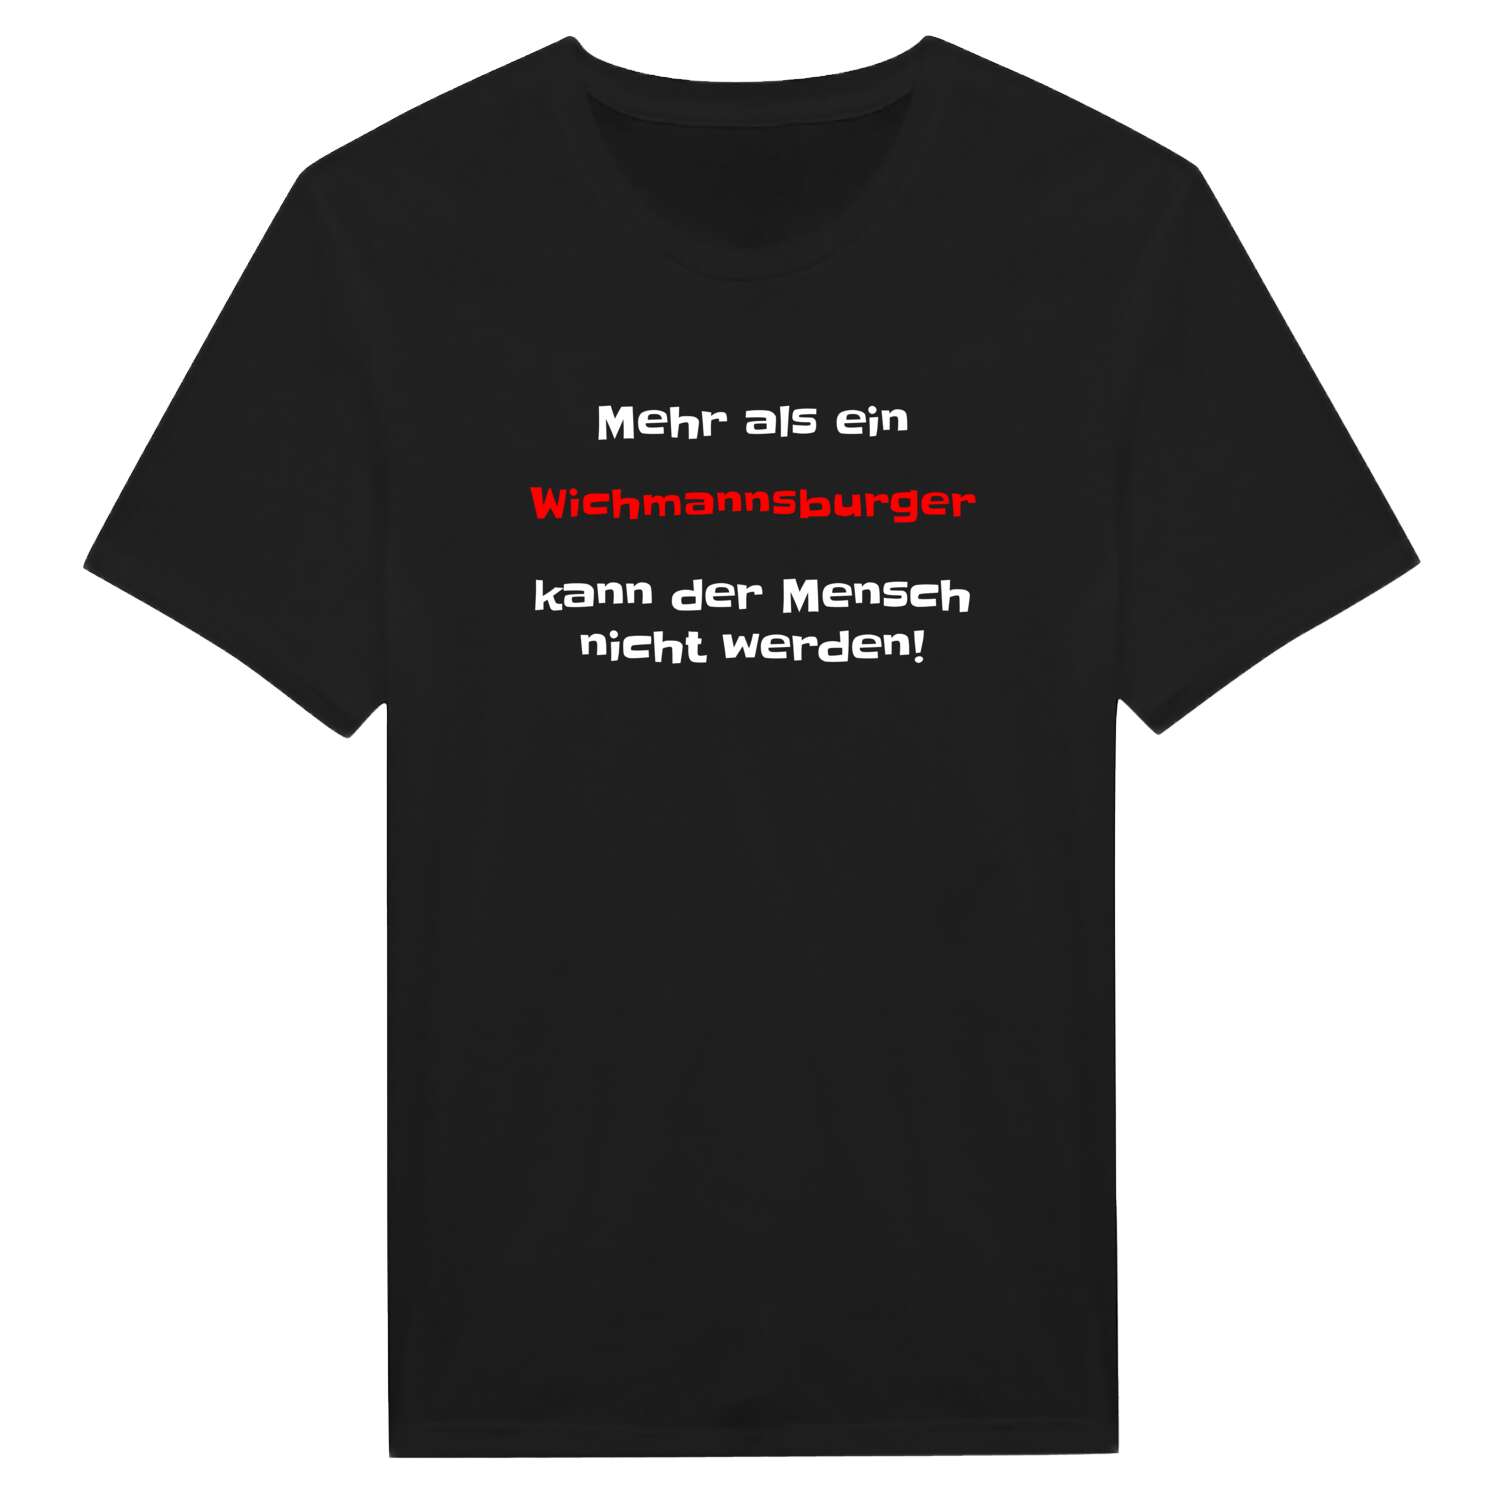 Wichmannsburg T-Shirt »Mehr als ein«